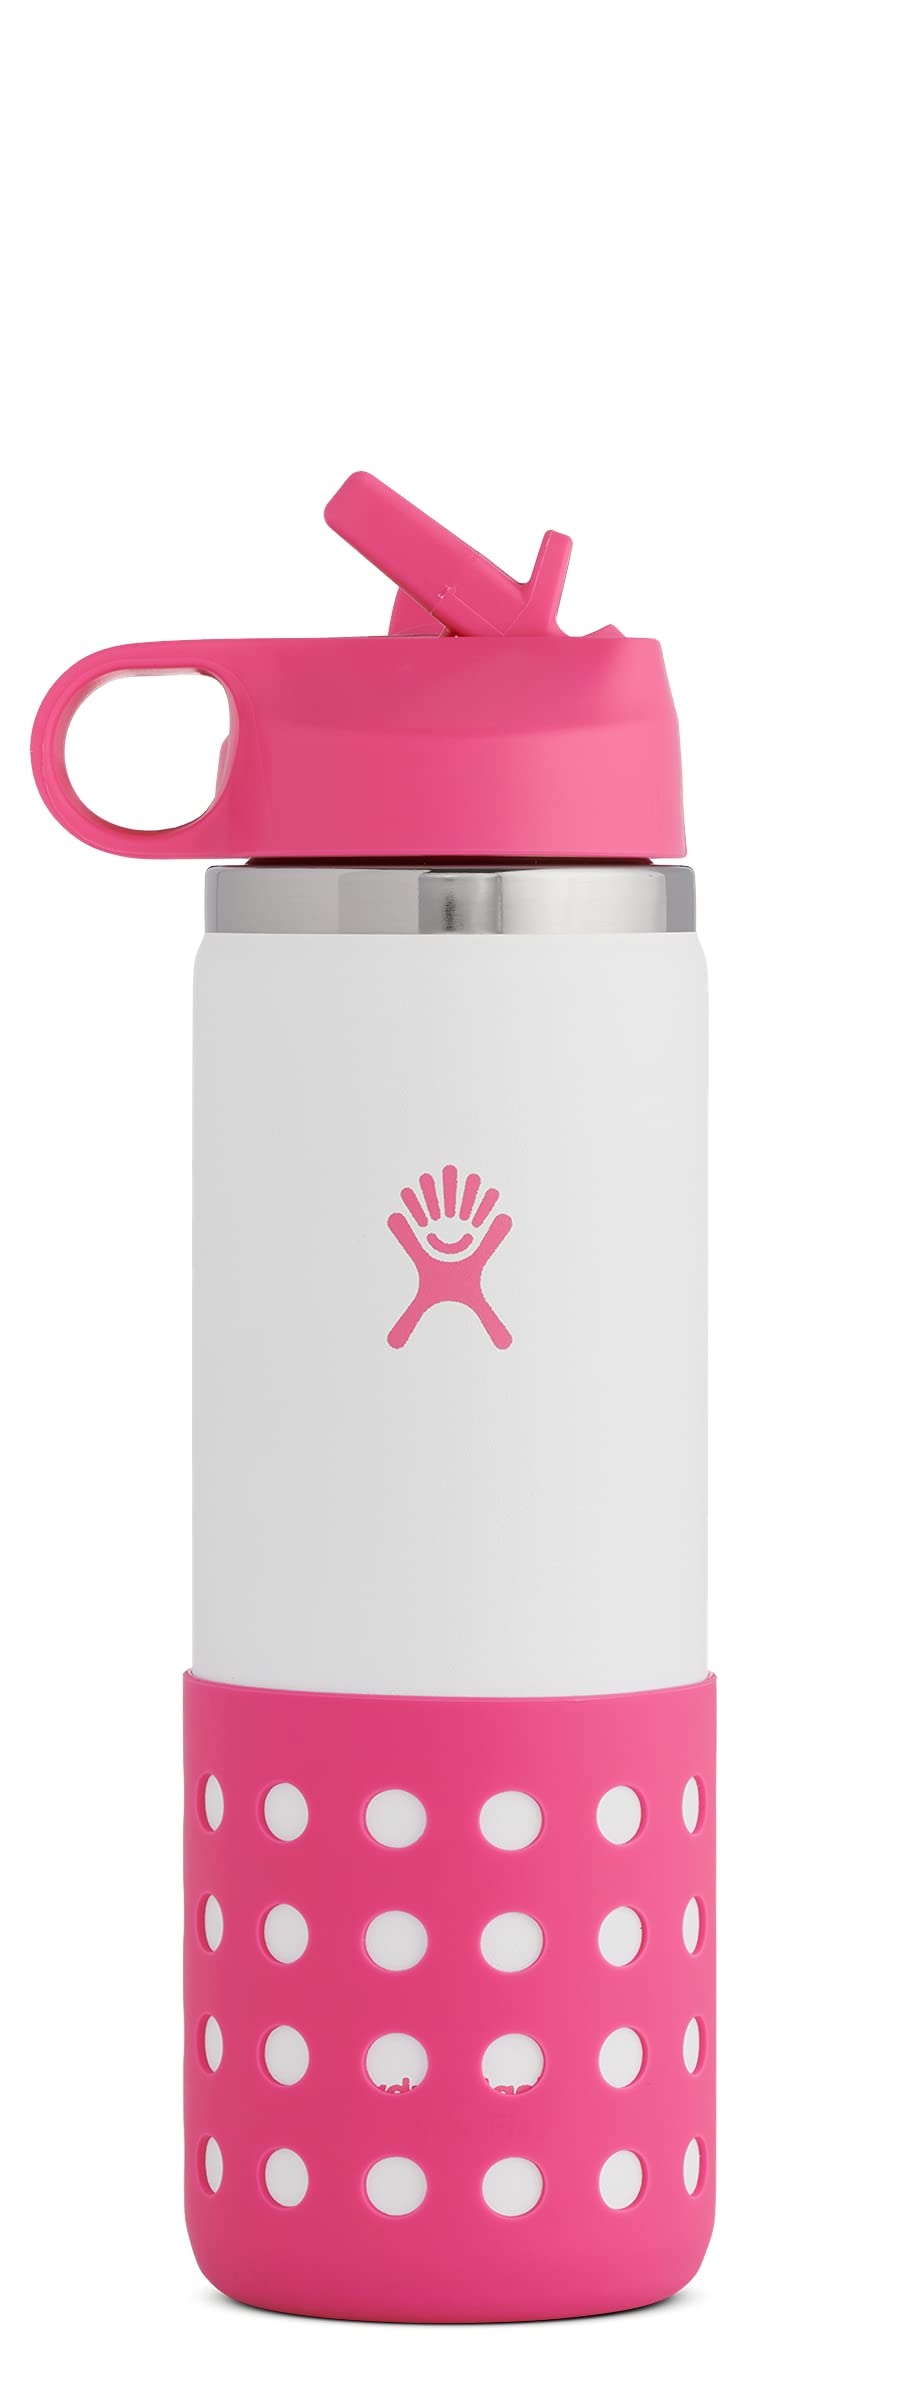 HYDRO FLASK - Trinkflasche für Kinder, 354ml (12oz) - Vakuumisolierte Wasserflasche aus Edelstahl - Thermoflasche mit praktischem Straw Lid-Trinkhalmdeckel - BPA-frei, Spülmaschinenfest - Punch